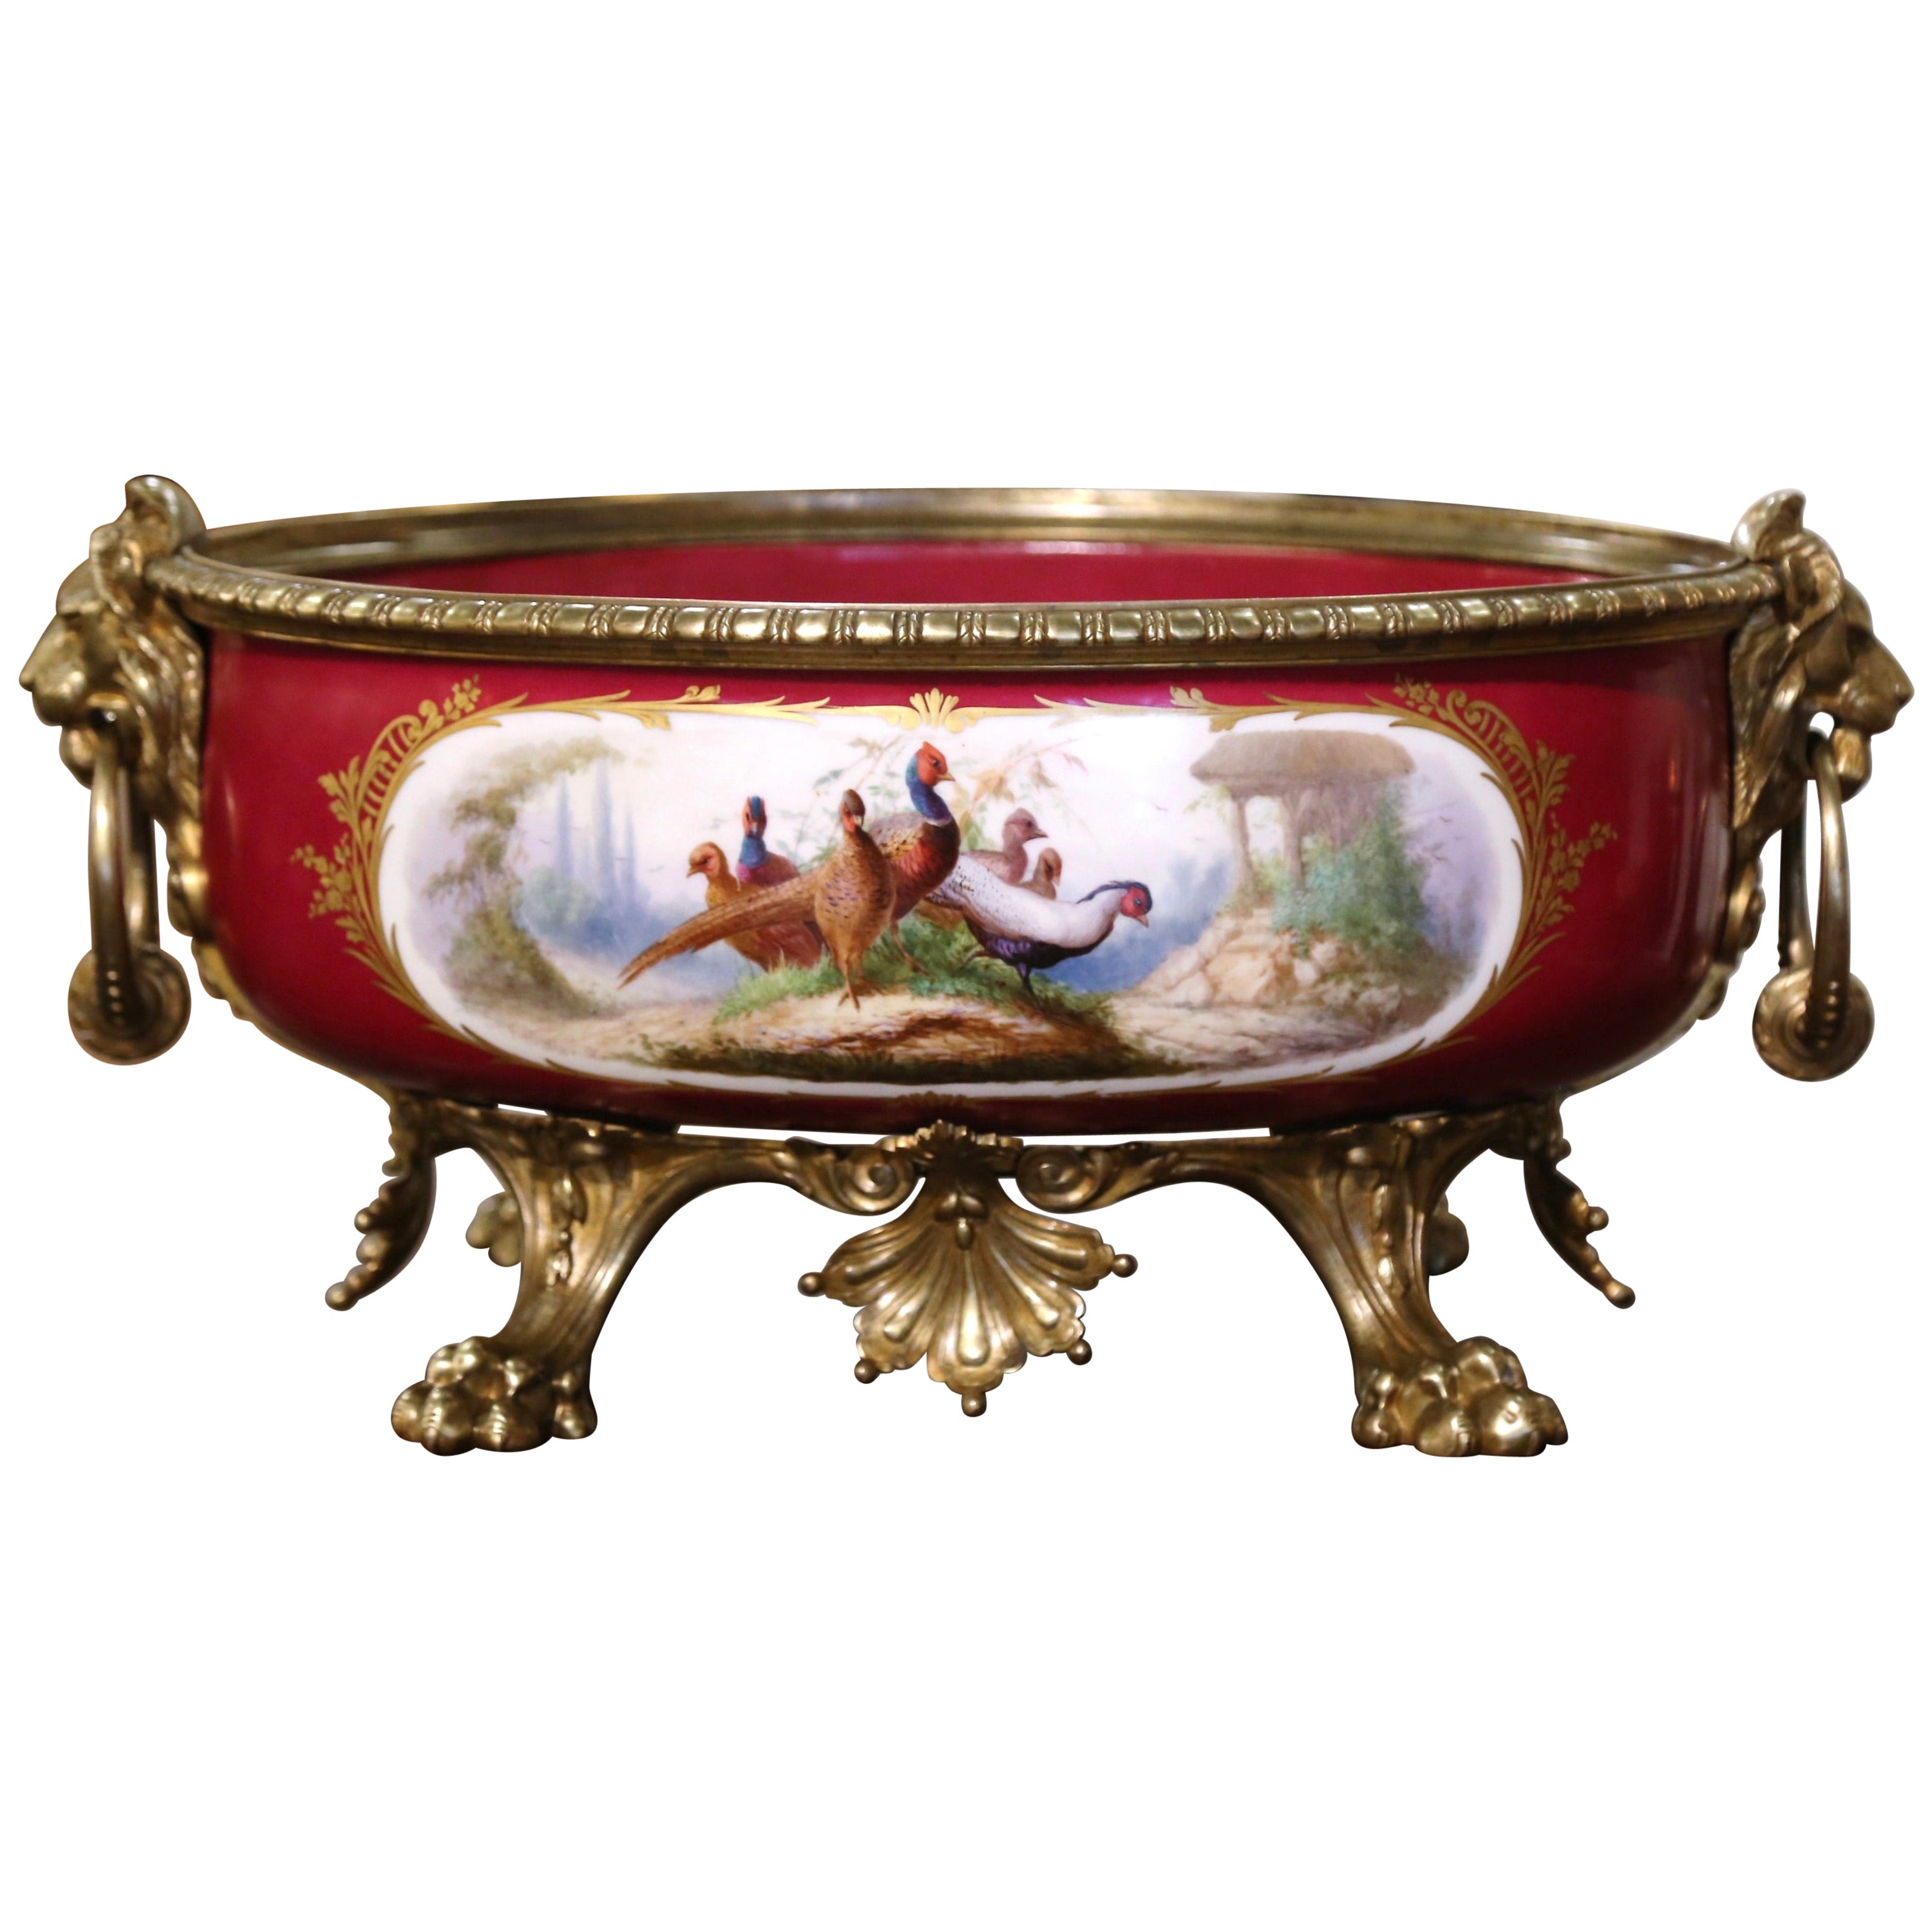 Jardinière ovale de style Empire français du 19ème siècle peinte à la main « Porcelaine de Paris »